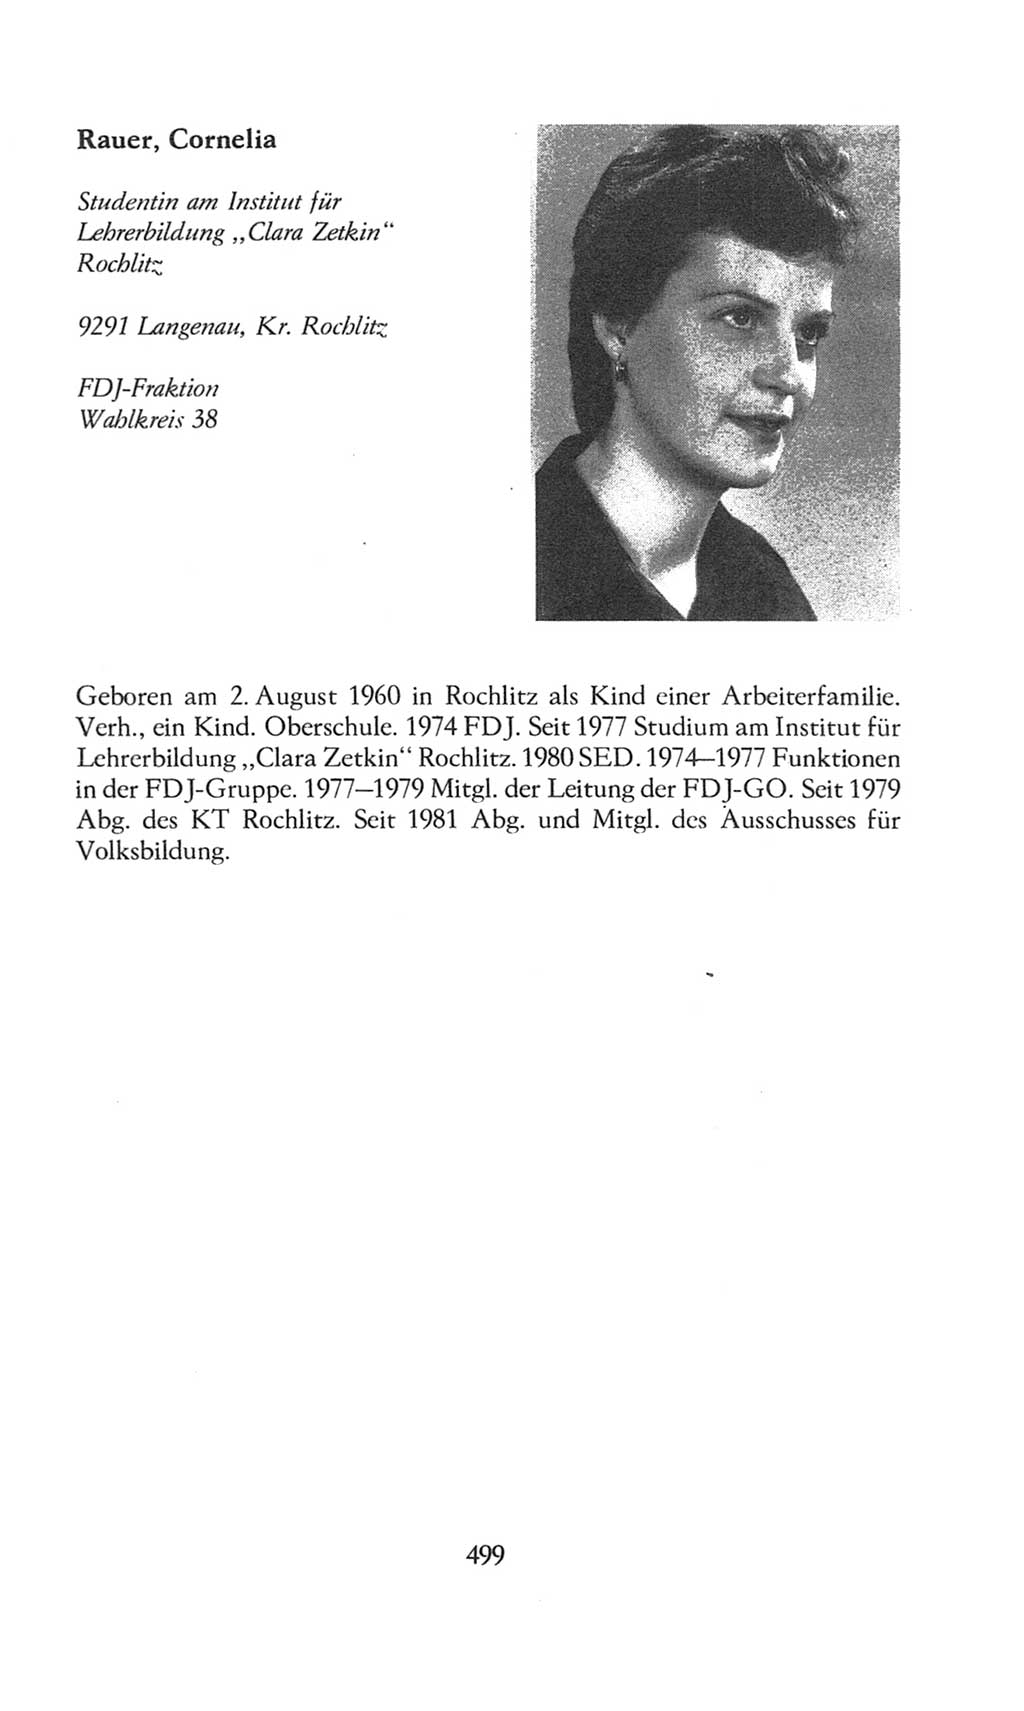 Volkskammer (VK) der Deutschen Demokratischen Republik (DDR), 8. Wahlperiode 1981-1986, Seite 499 (VK. DDR 8. WP. 1981-1986, S. 499)